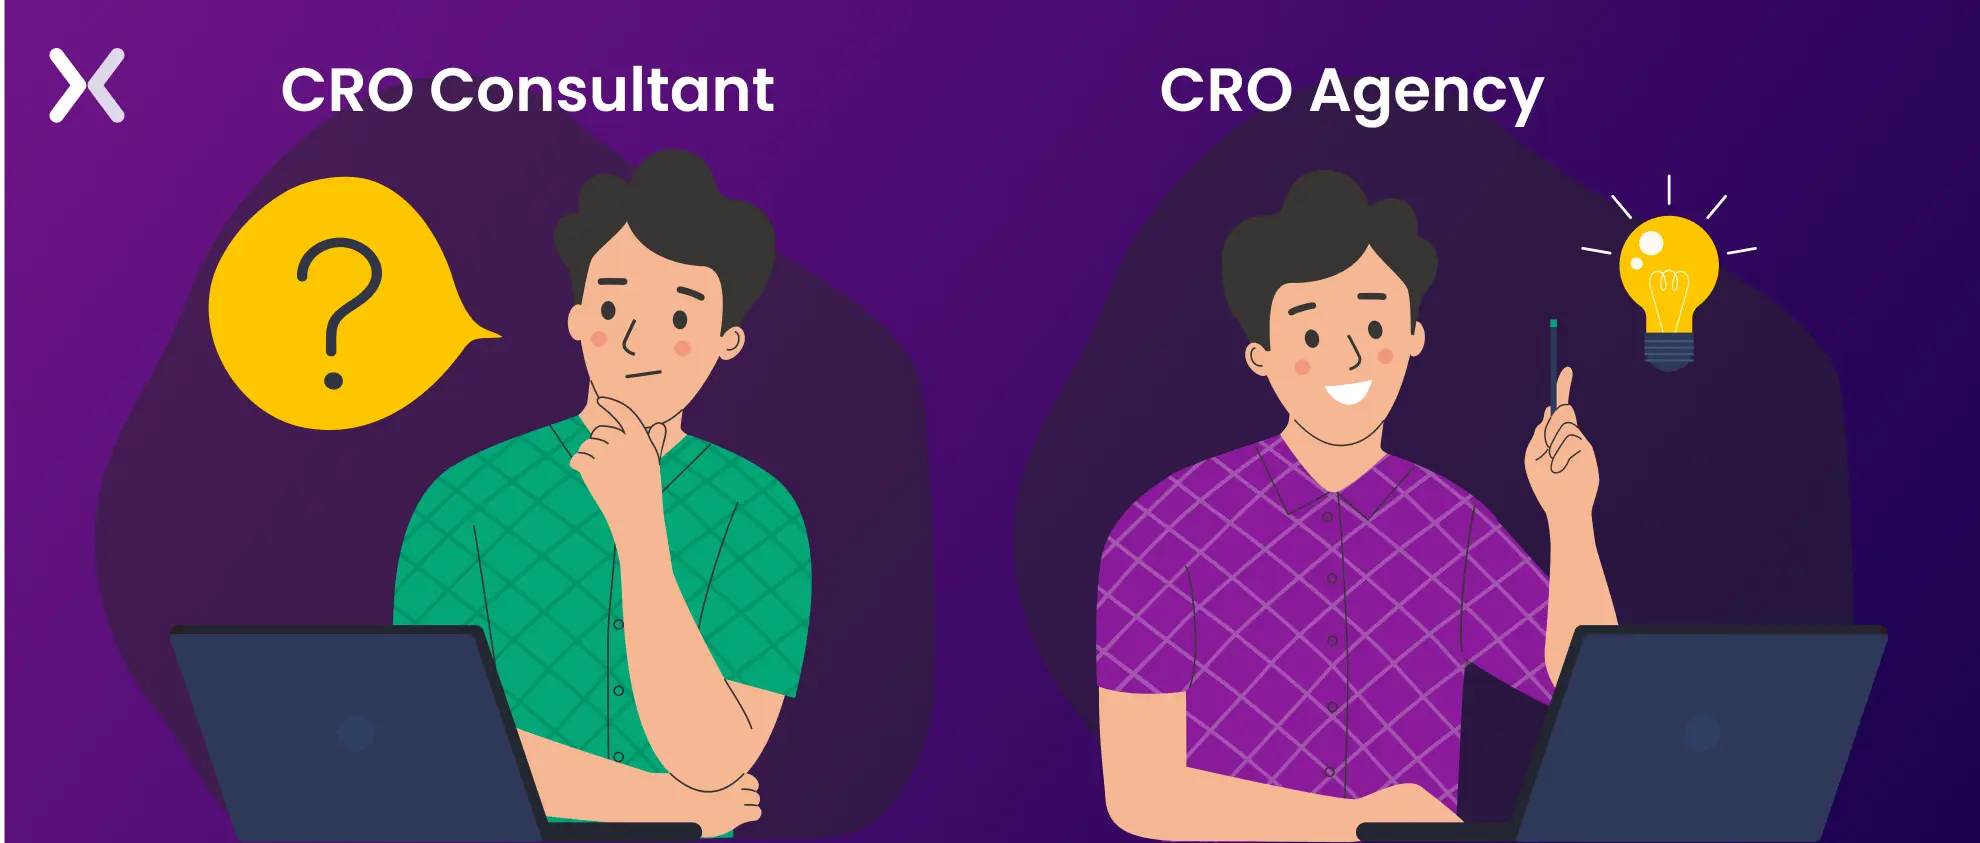 cro-consultant-vs-cro-agency-21836d.webp